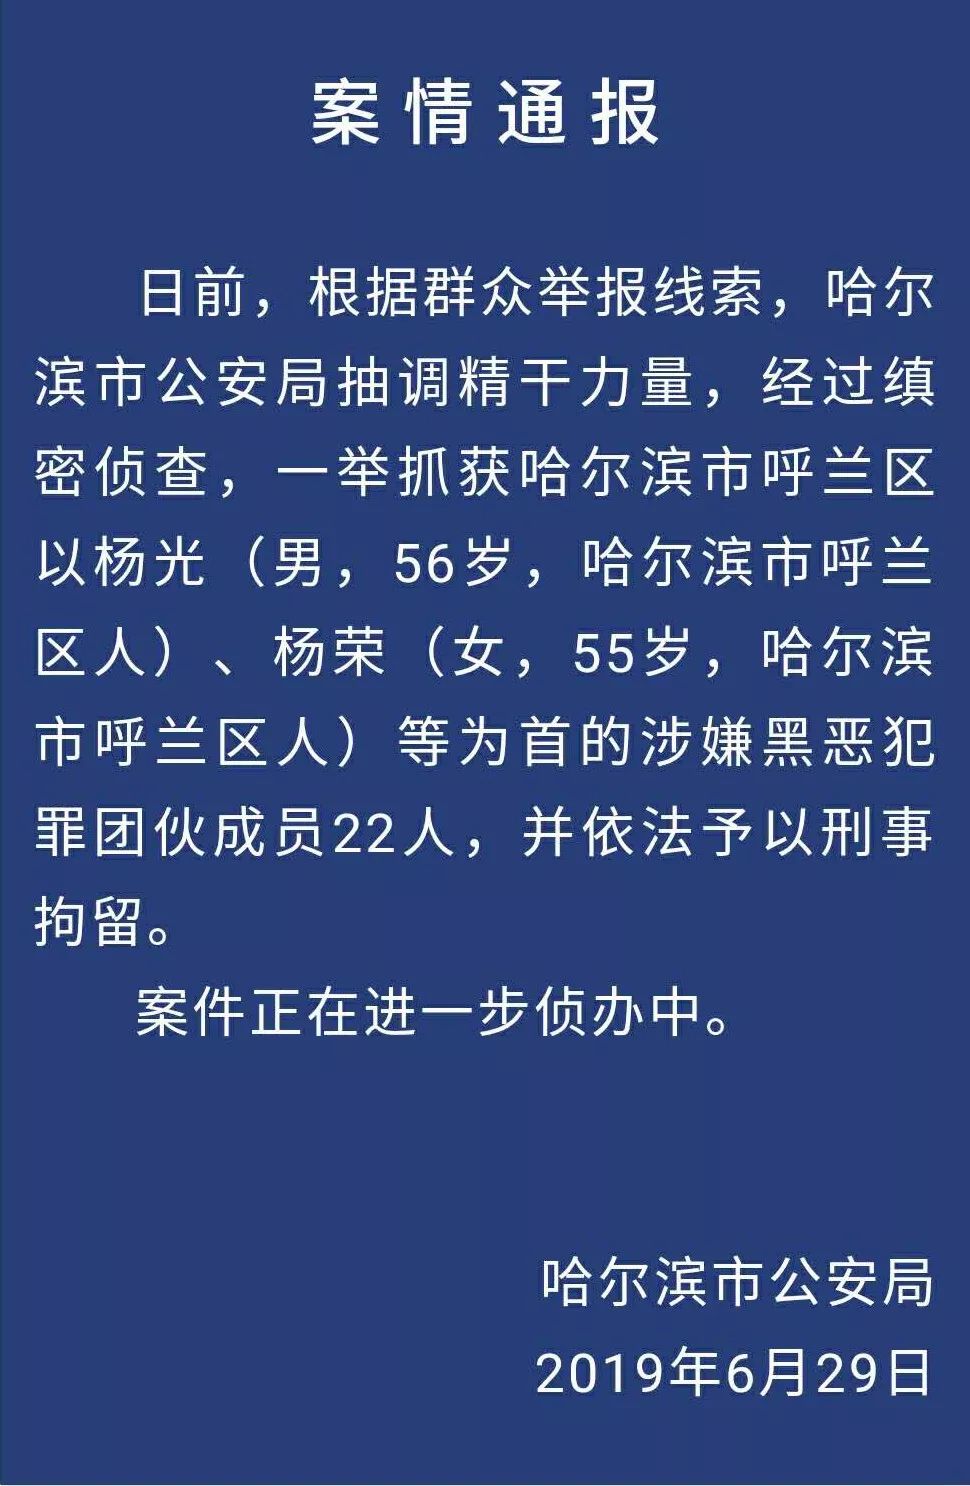 警方通报 呼兰区以杨光杨荣等为首的涉嫌黑团伙被抓获,附视频!